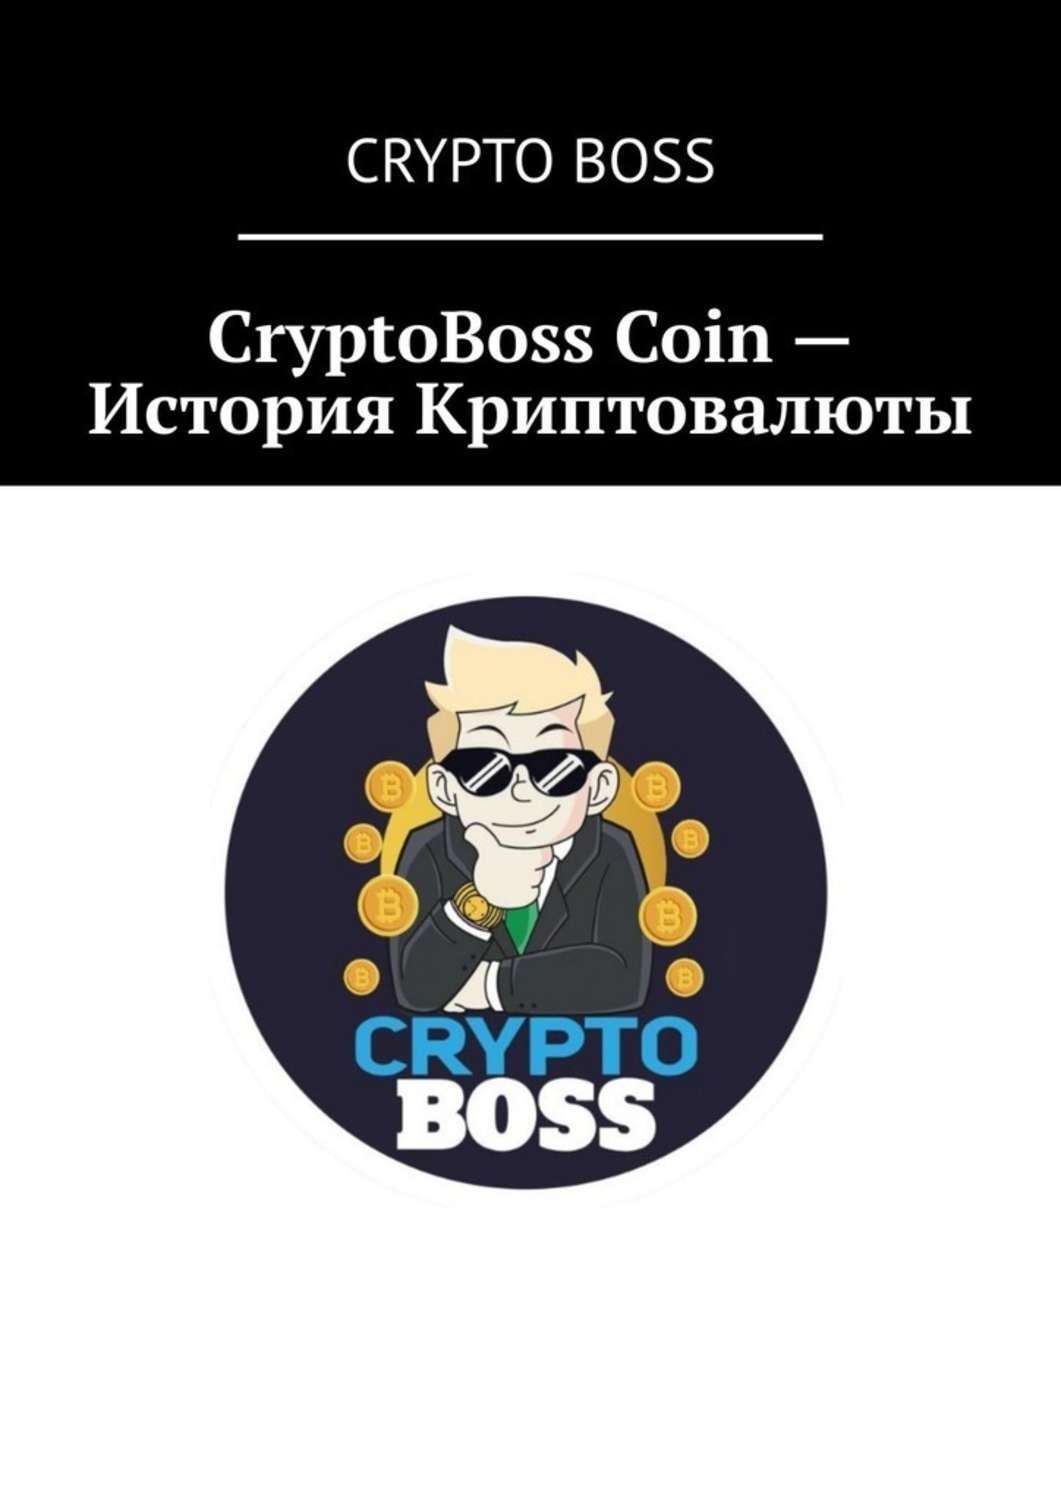 Крипто босс cryptoboss casino fun. CRYPTOBOSS. Crypto Boss. Крипто книга. Фото крипто бос.